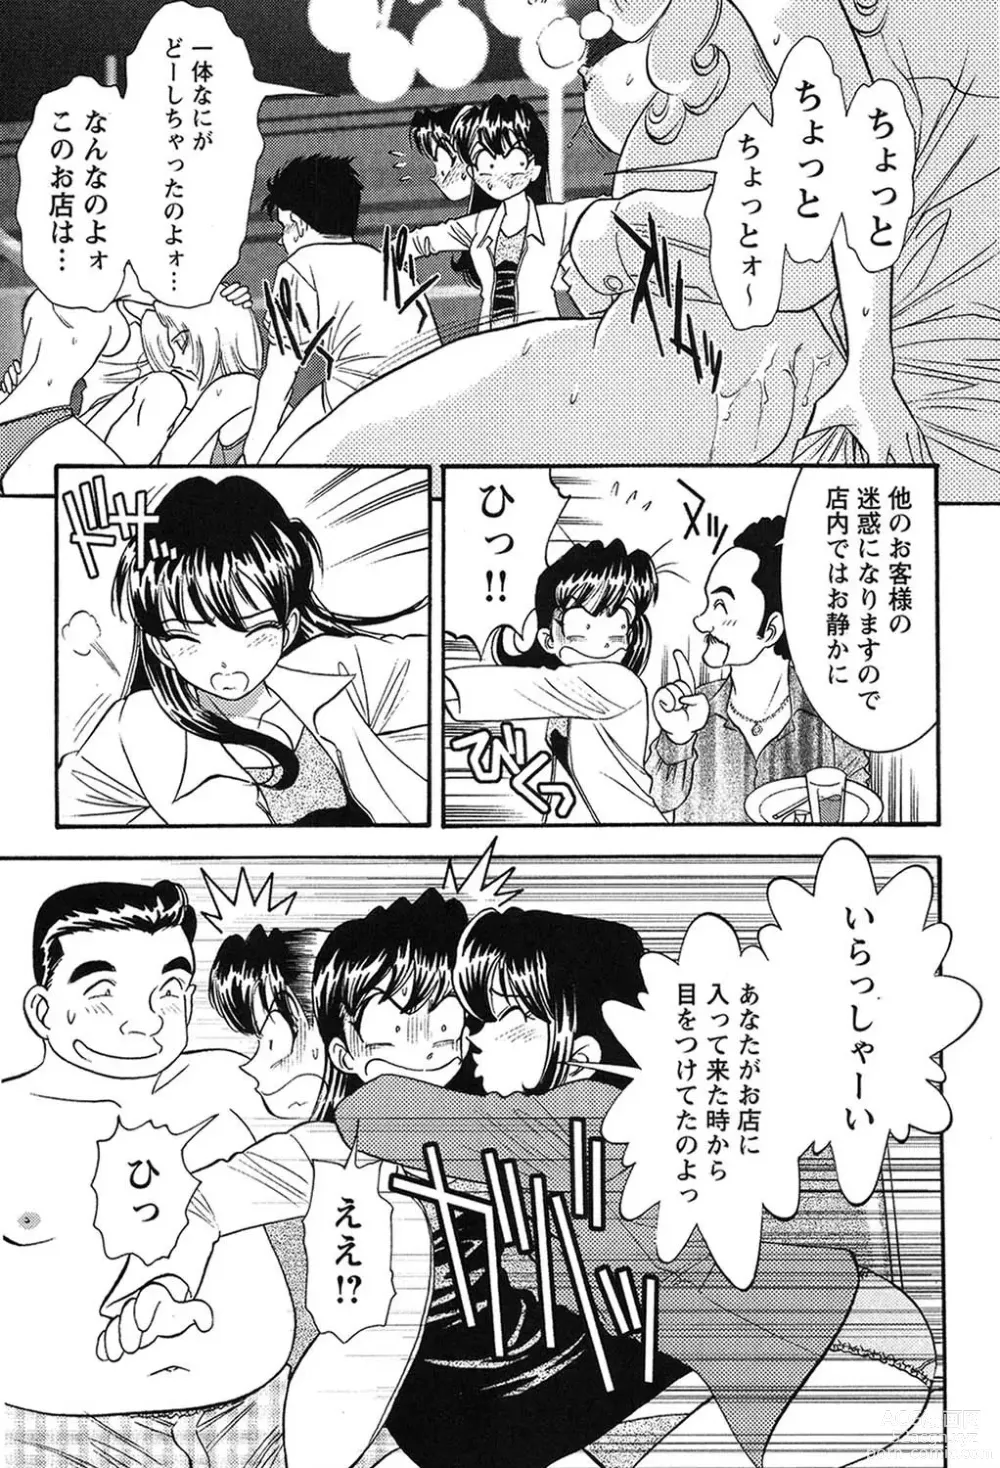 Page 16 of manga Bambina Oiroke  Battle  Hen